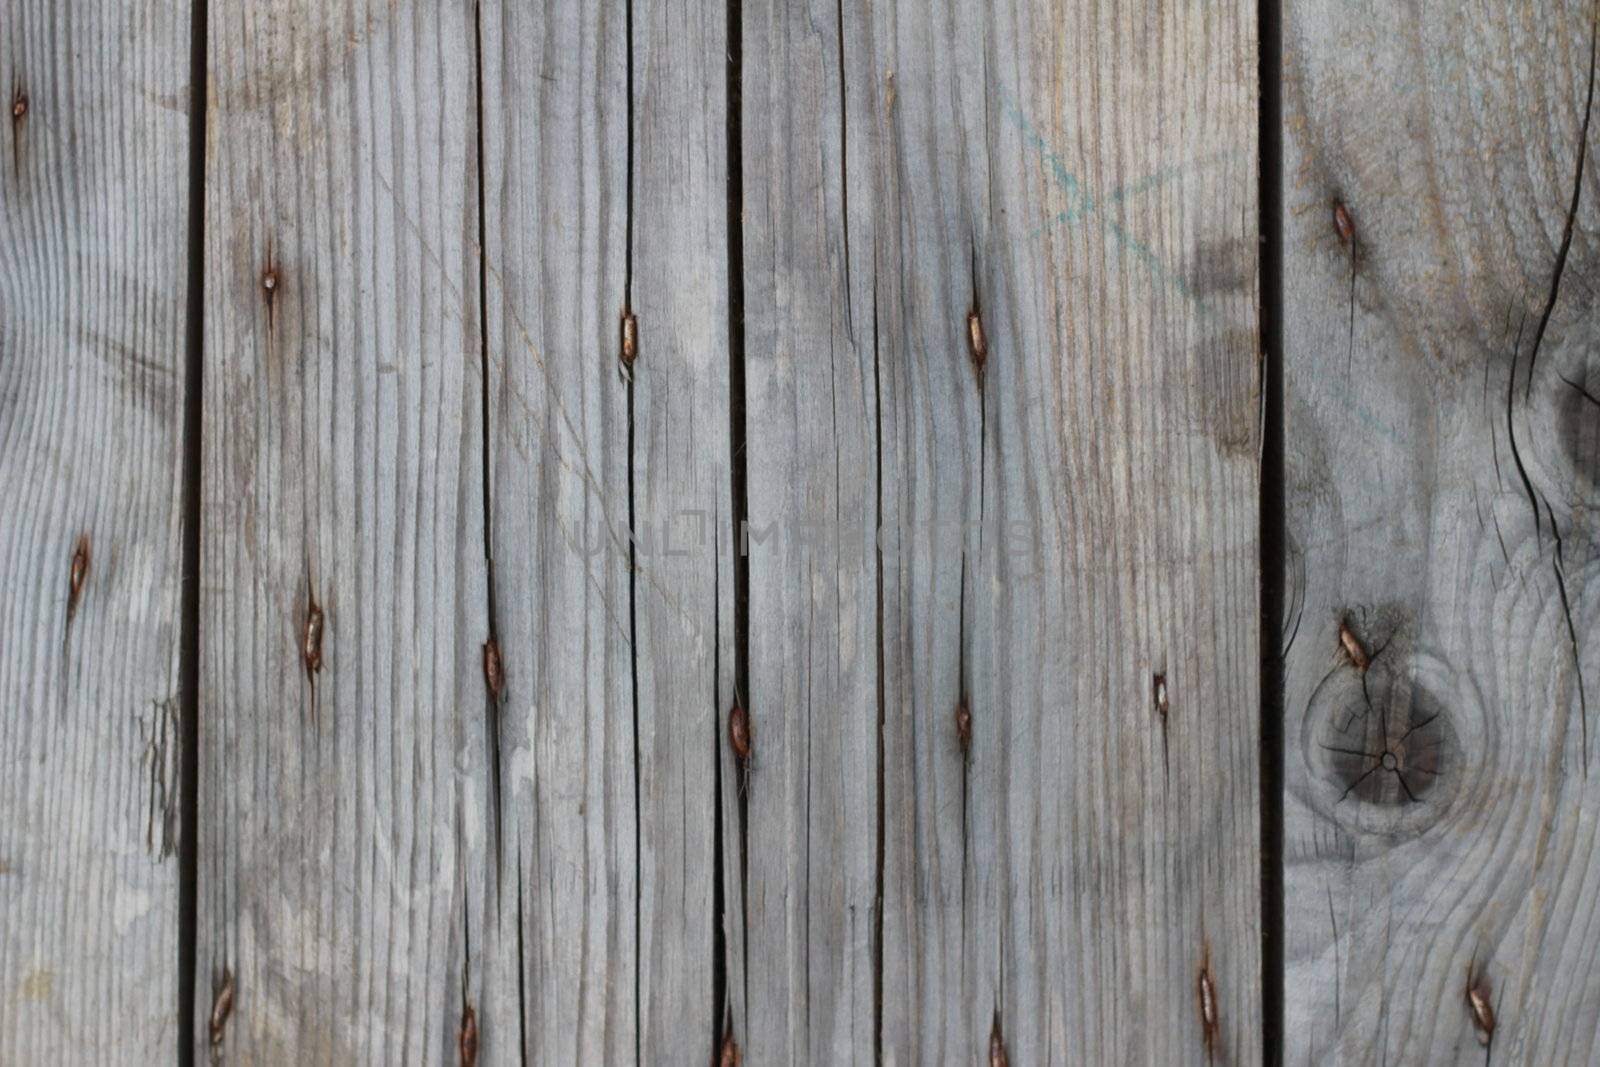 plain wooden fence texture